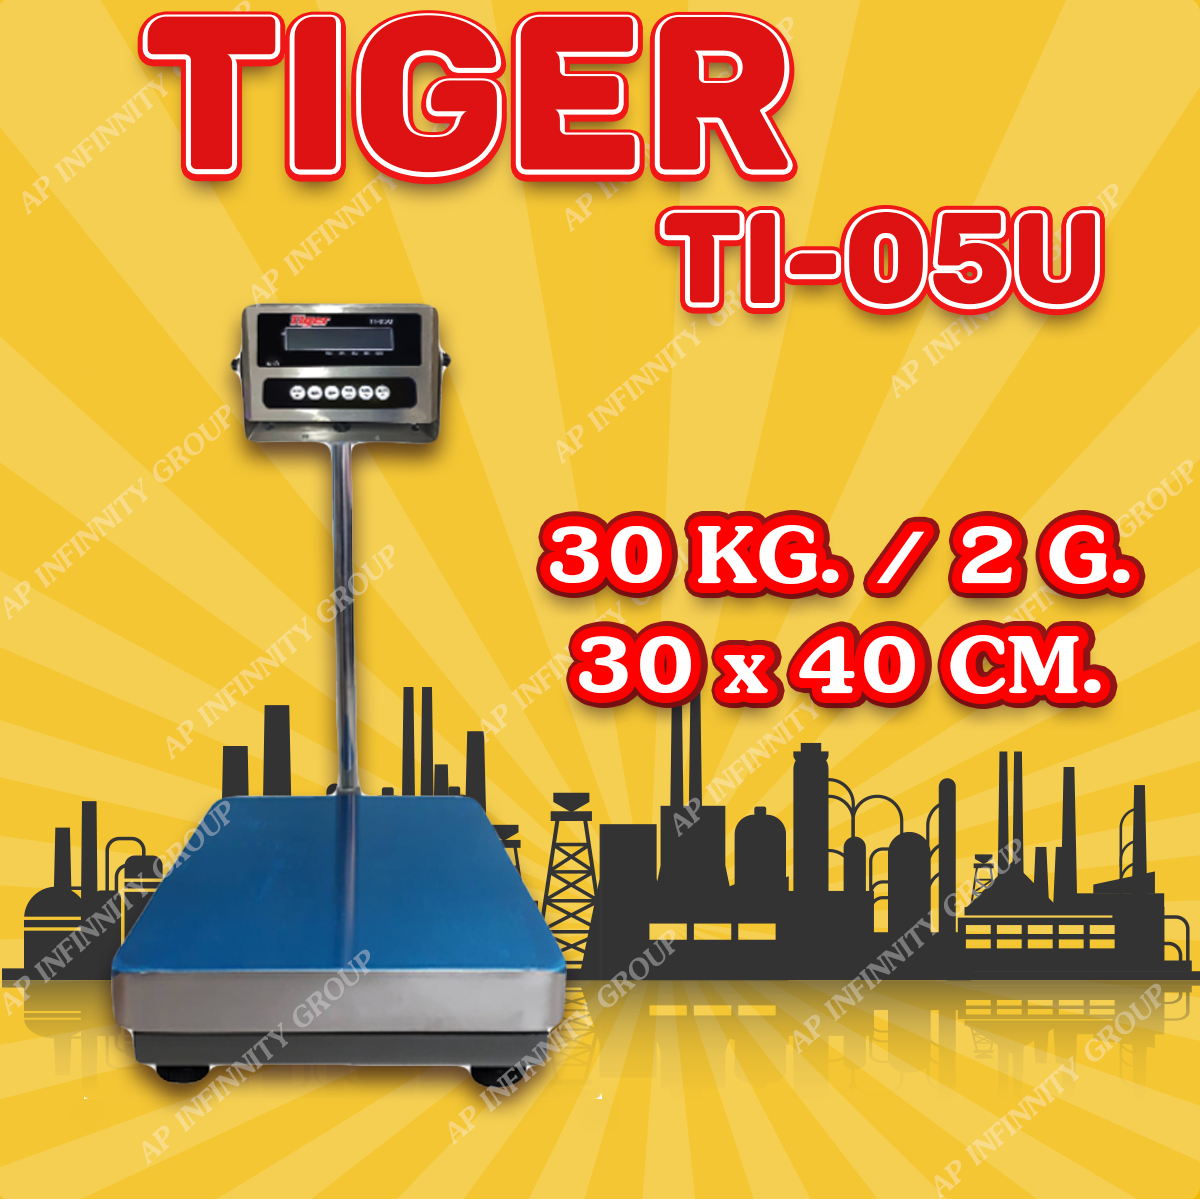 ตาชั่งดิจิตอล เครื่องชั่งดิจิตอล เครื่องชั่งตั้งพื้น 30kg ความละเอียด 2g ยี่ห้อ Tiger รุ่น TI–05U แท่นชั่งขนาดฐาน 30x 40cm มีช่อง USB สำหรับการบันทึกข้อมูลได้ รูปที่ 1